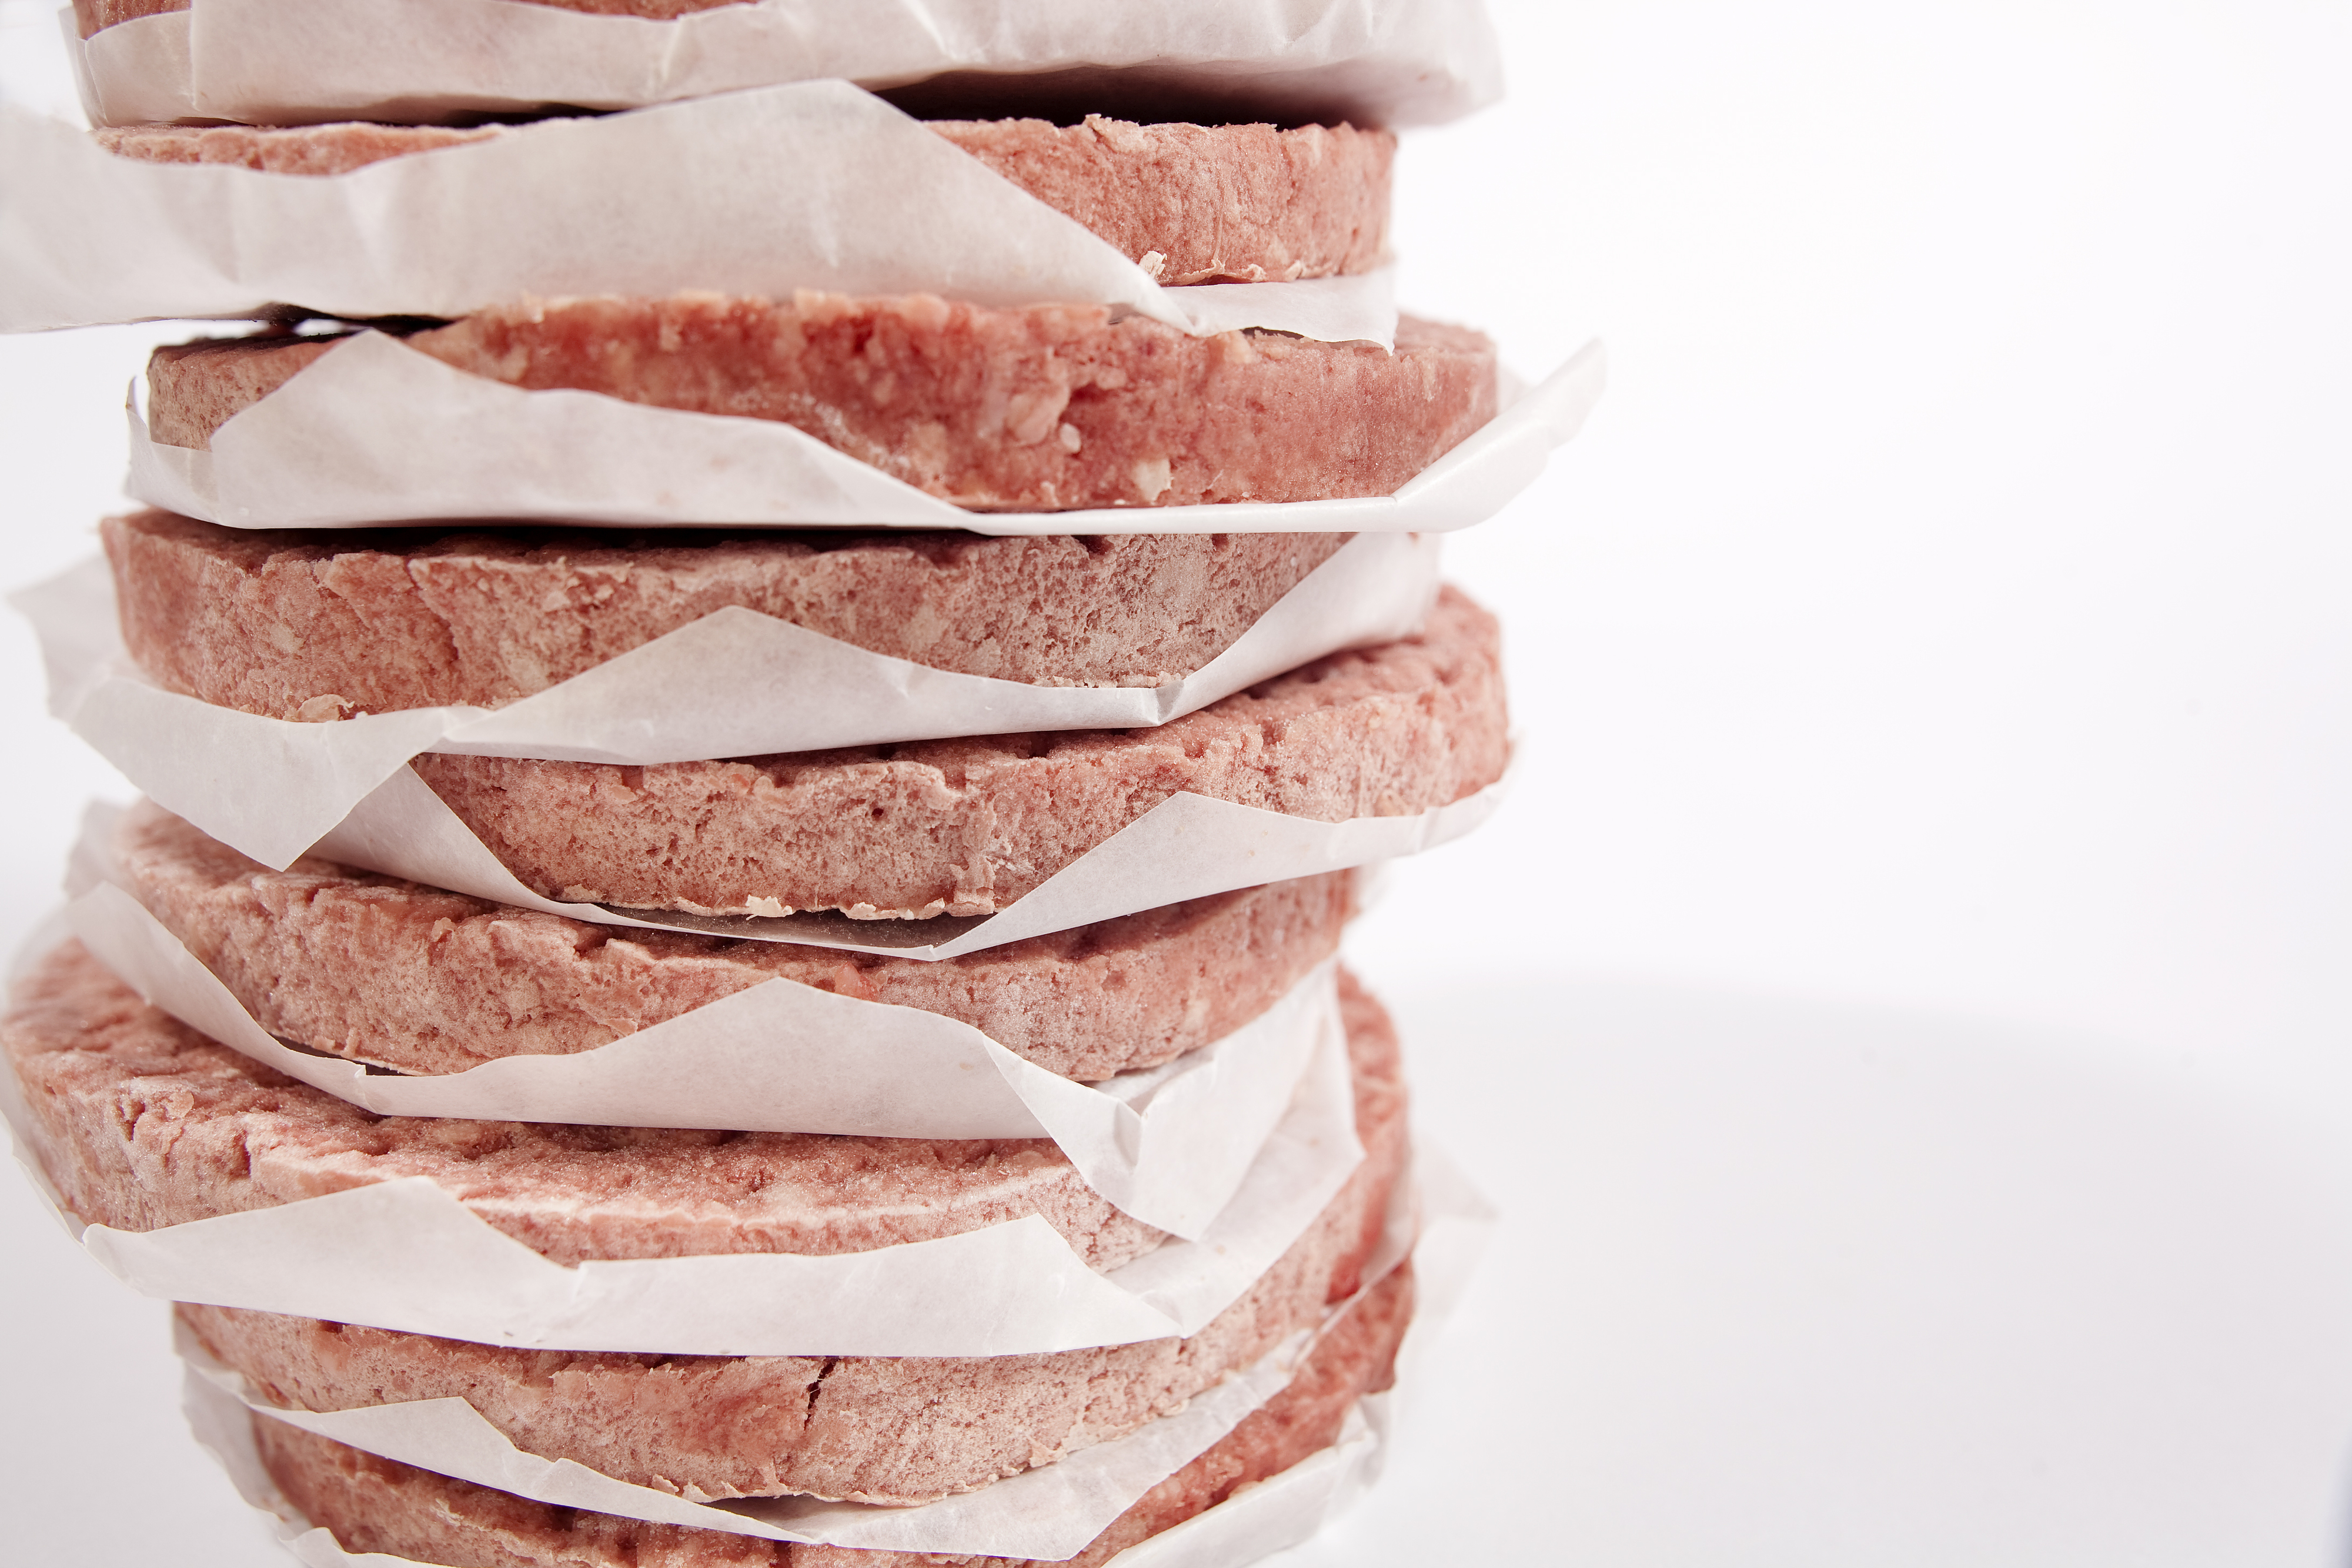 frozen burger patties with paper in between